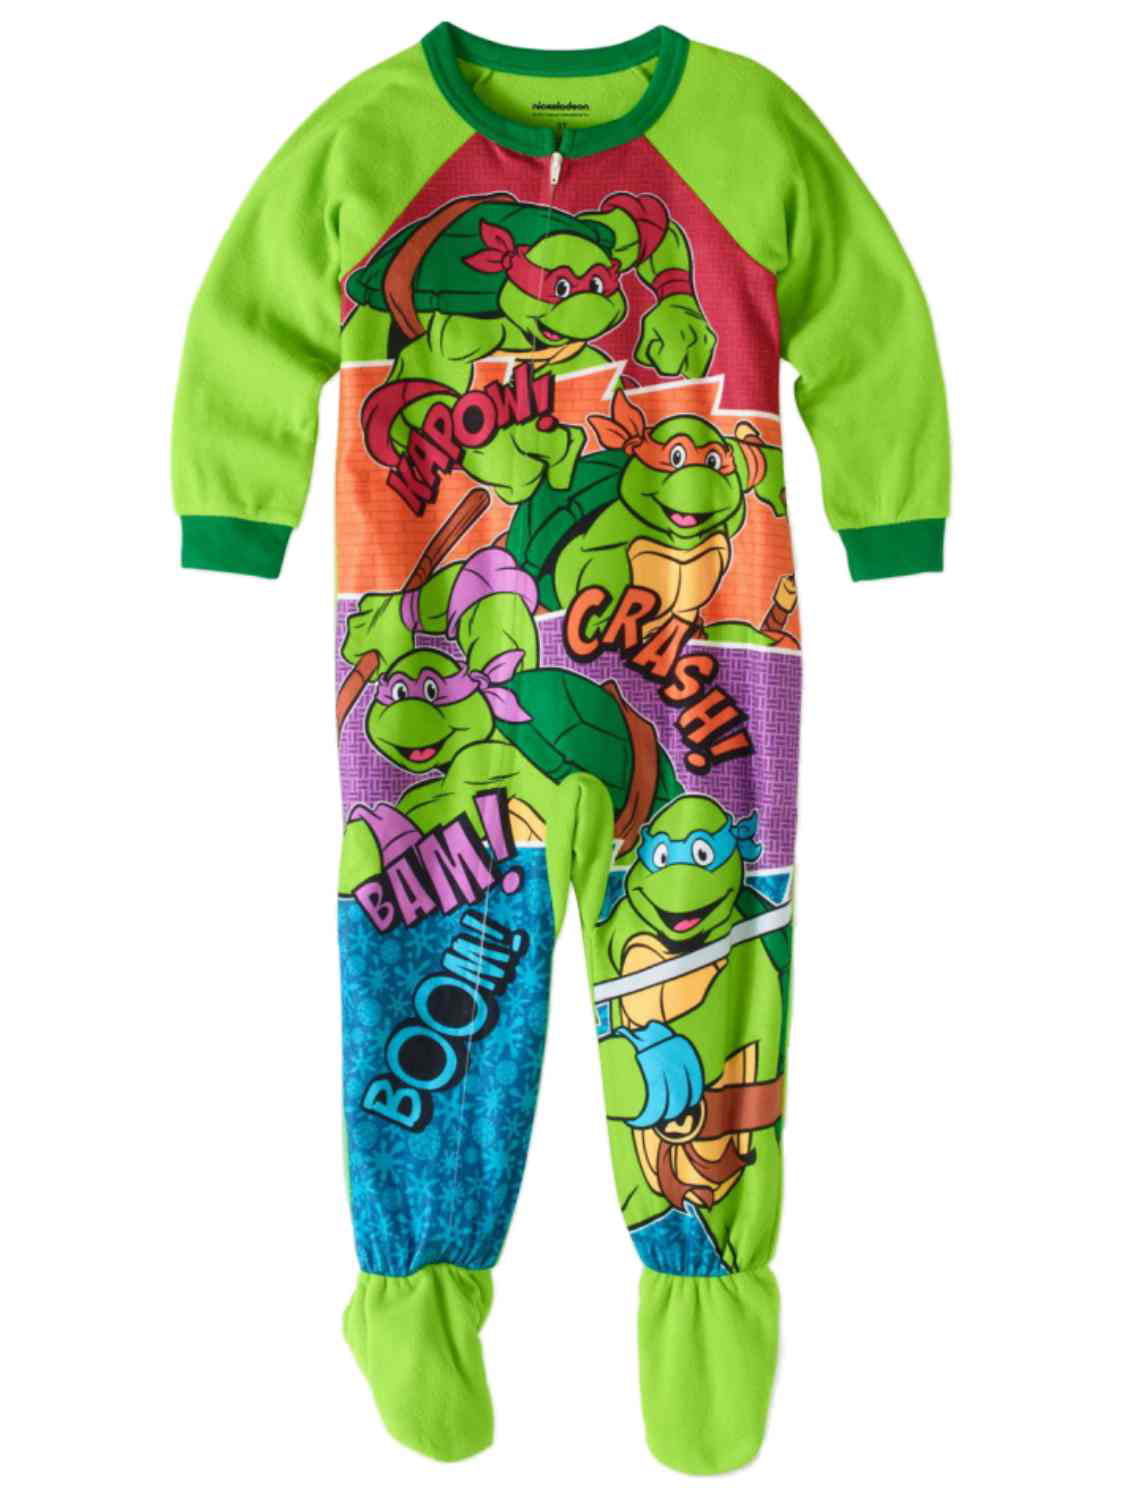 Teenage Mutant Ninja Turtles Boy Sleeper Blanket Pajama Size M 8 